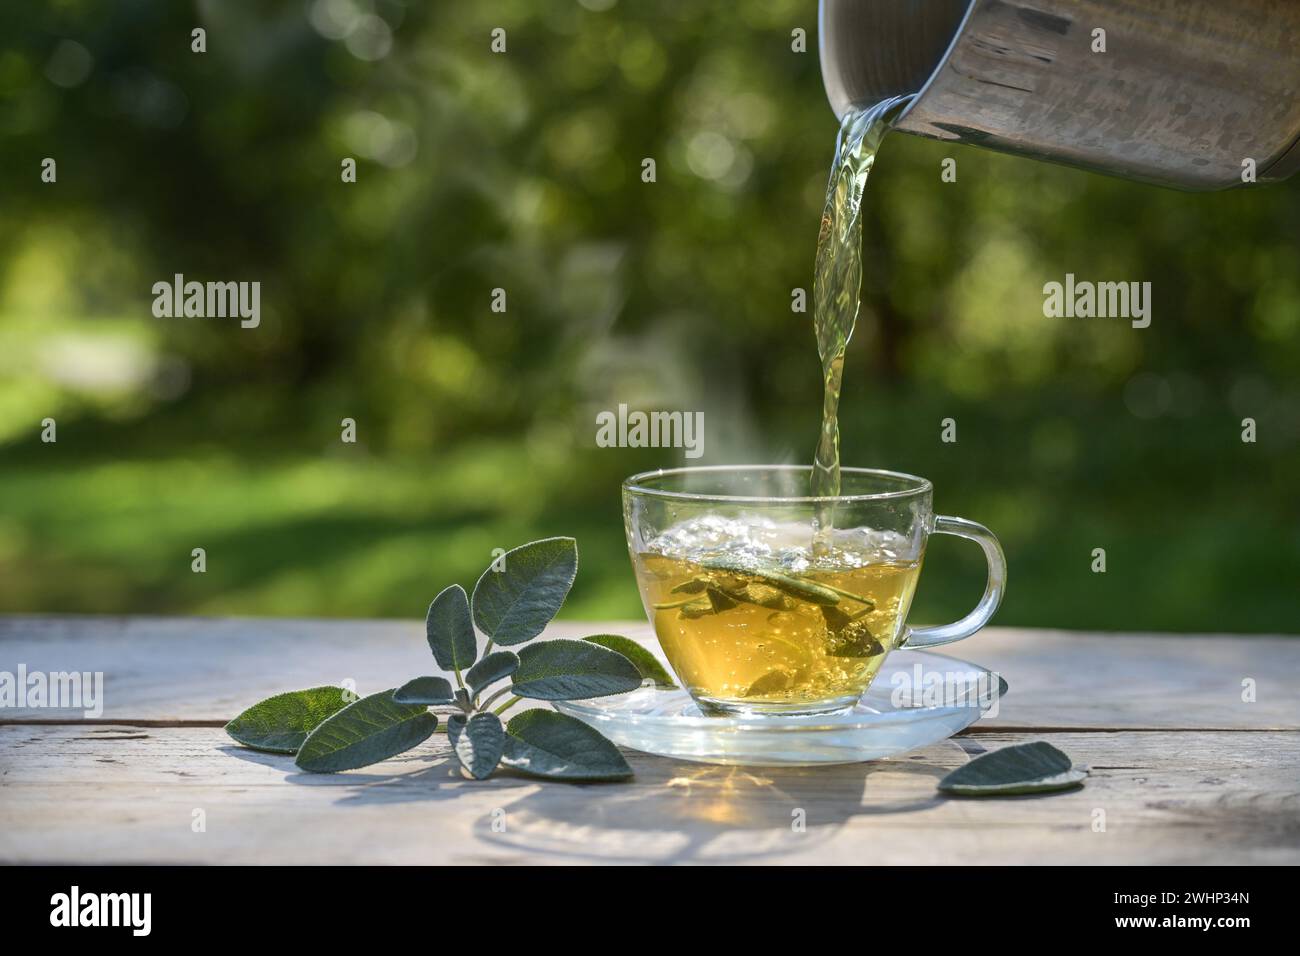 Verter agua caliente en una taza de vidrio con hojas de salvia, té de hierbas saludable y remedio casero para la tos, dolor de garganta y prob digestivo Foto de stock